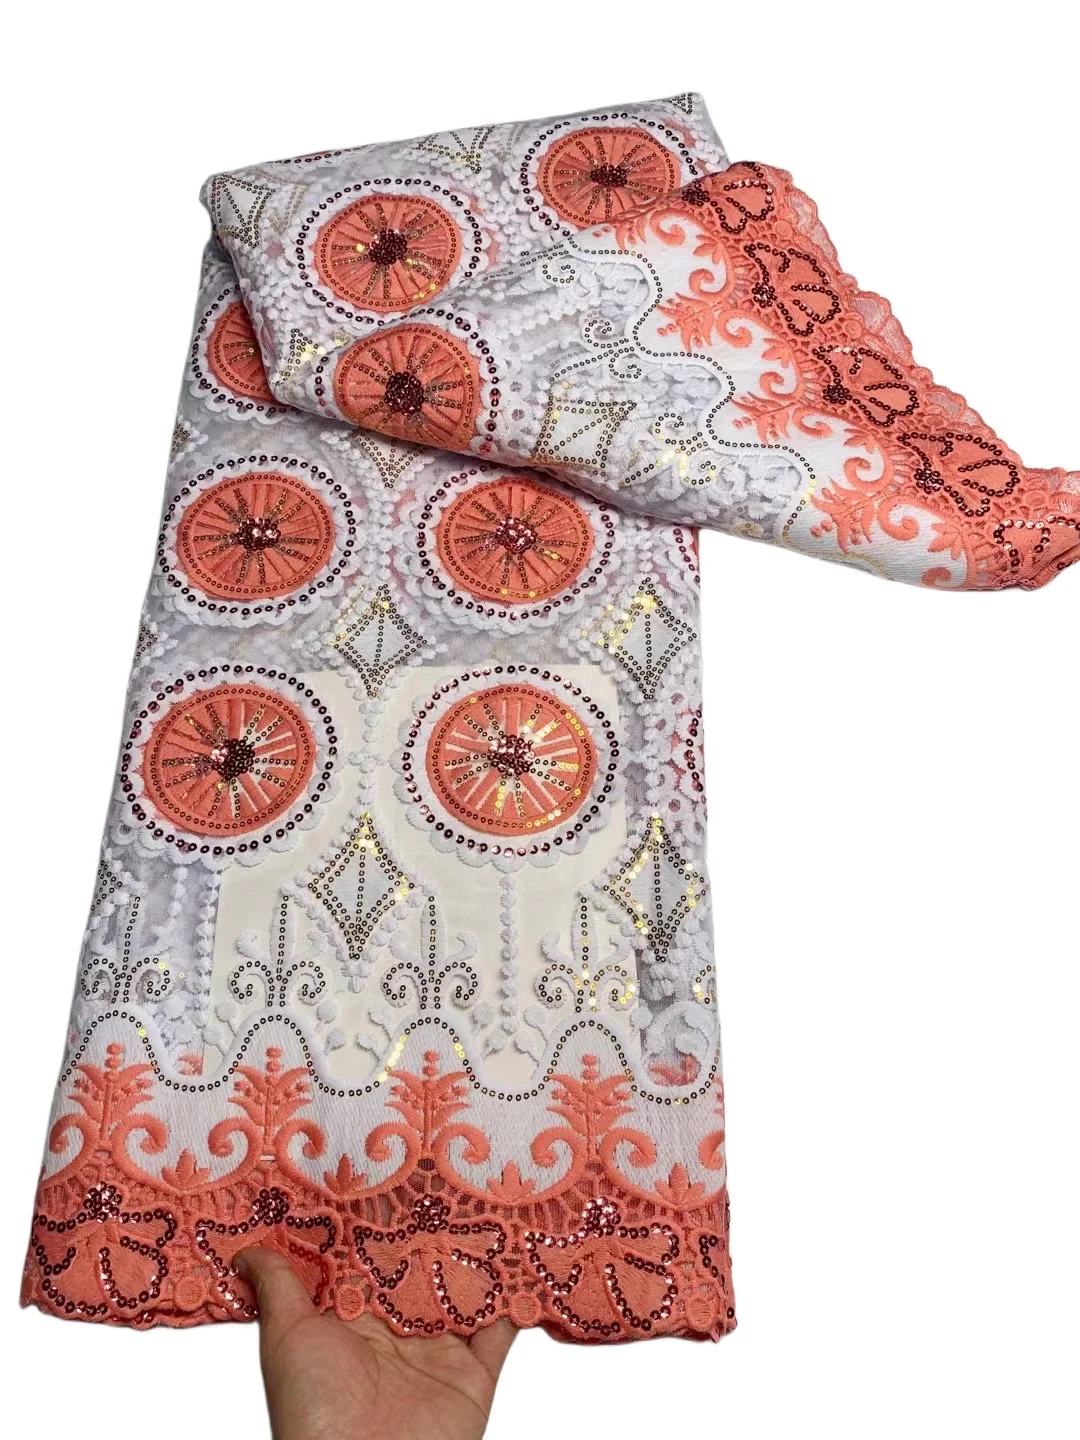 

YQOINFKS, 5 ярдов, новейшая швейная Тюлевая сетчатая вышивка, кружевная ткань с блестками, платья на день рождения для женщин, в африканском стиле